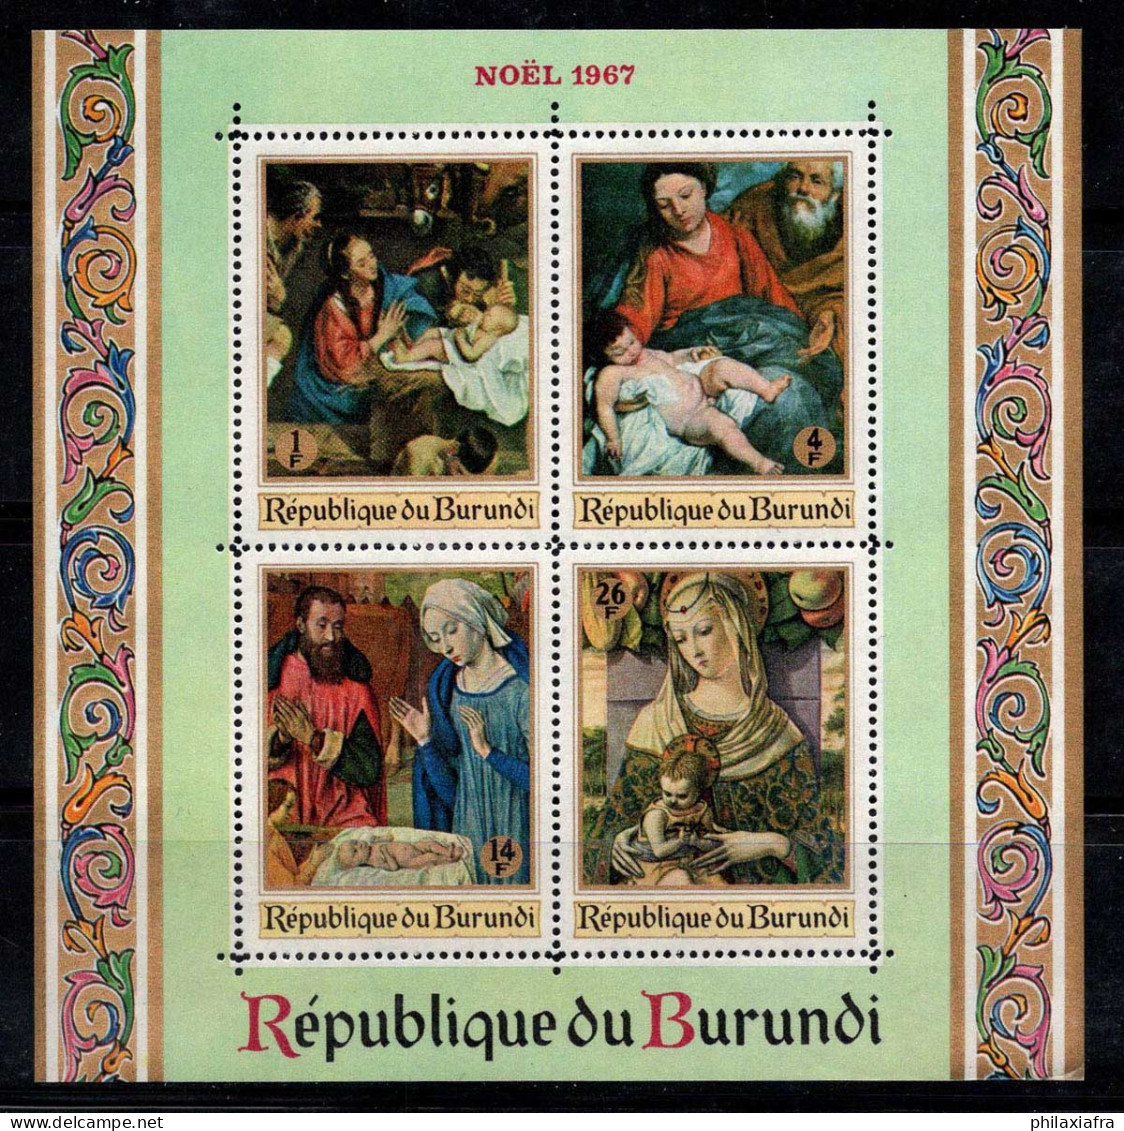 Burundi 1967 SG MS337 Bloc Feuillet 100% Neuf ** Noël, Peintures Religieuses - Ongebruikt